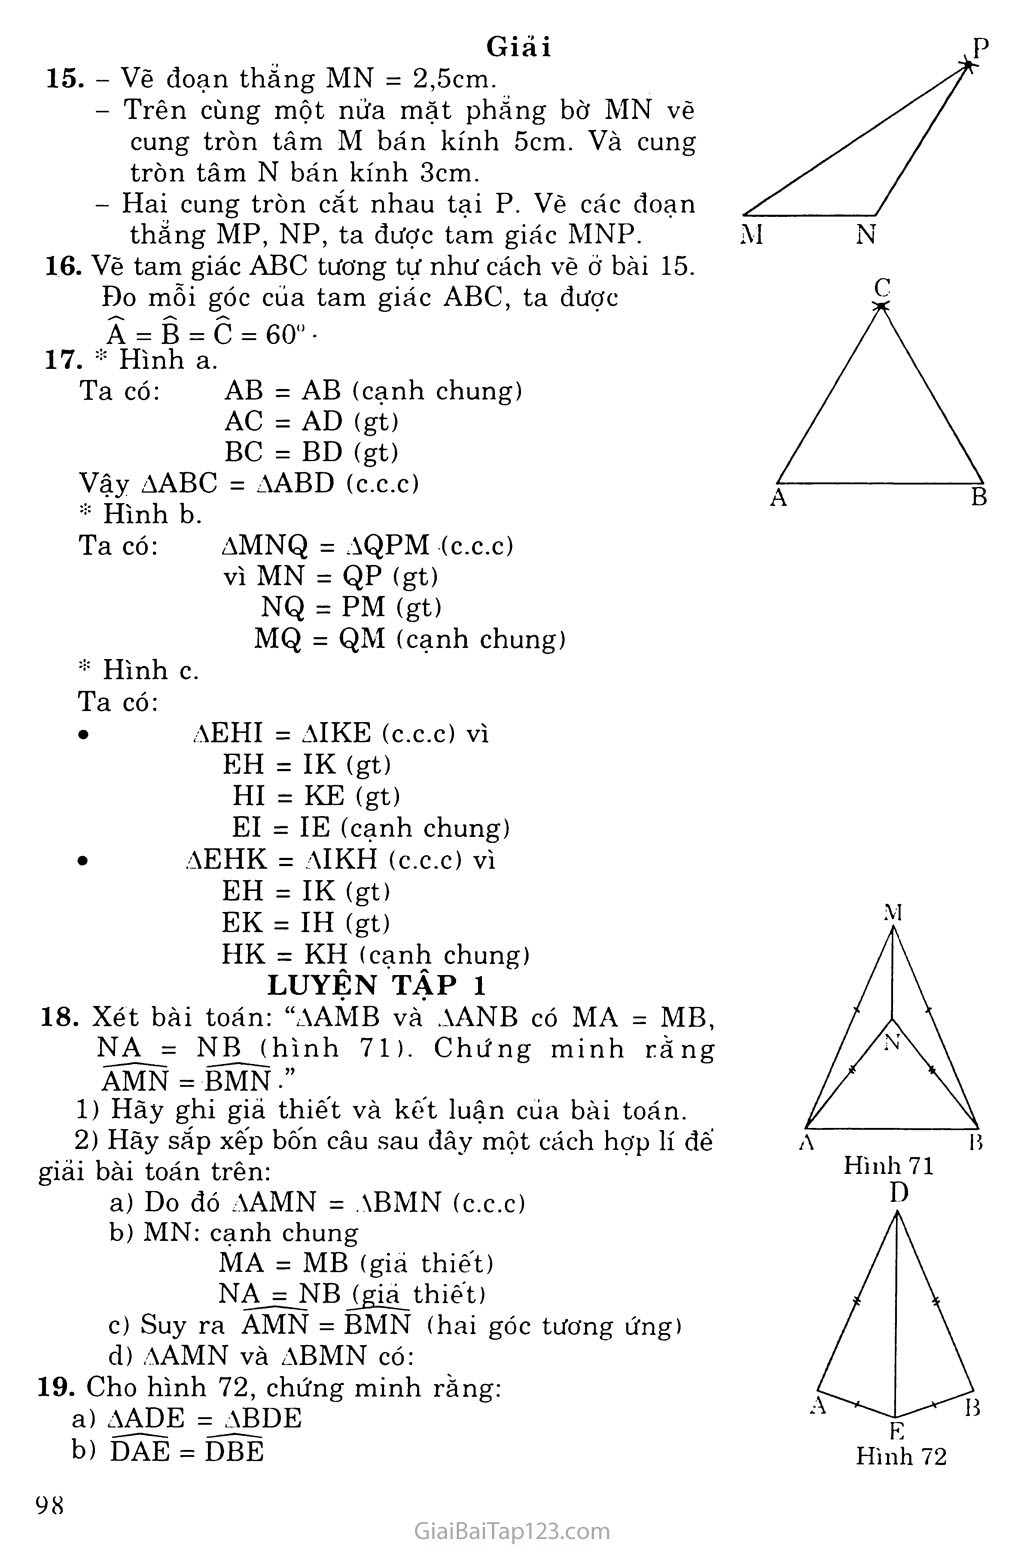 Bài 3. Trường hợp bằng nhau thứ nhất của tam giác: cạnh - cạnh - canh (c. c. c) trang 2